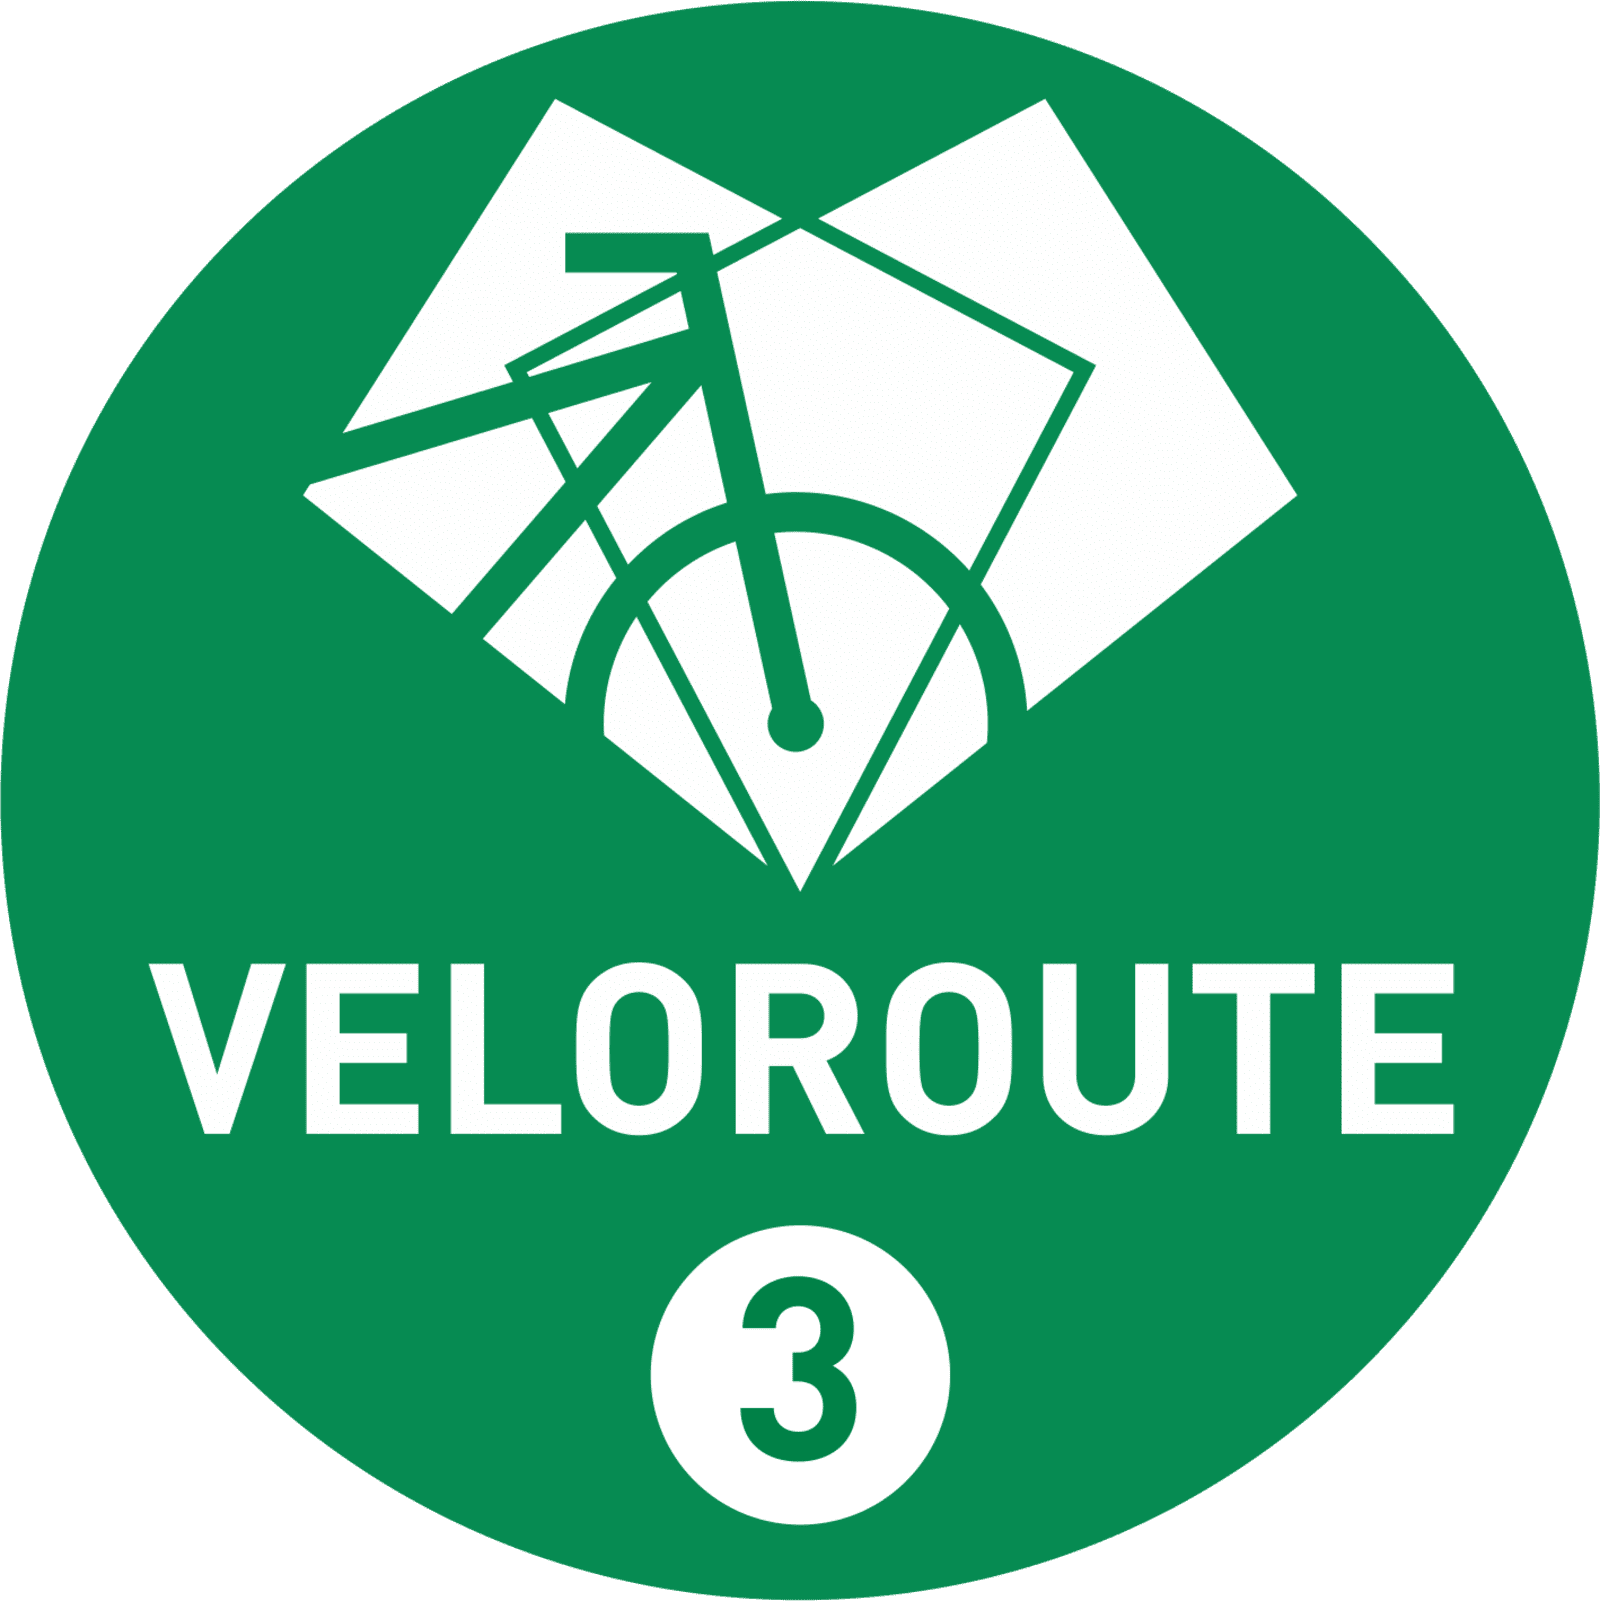 Grünes, rundes Logo mit der Abbildung eines Fahrrads und der Aufschrift Veloroute 3.